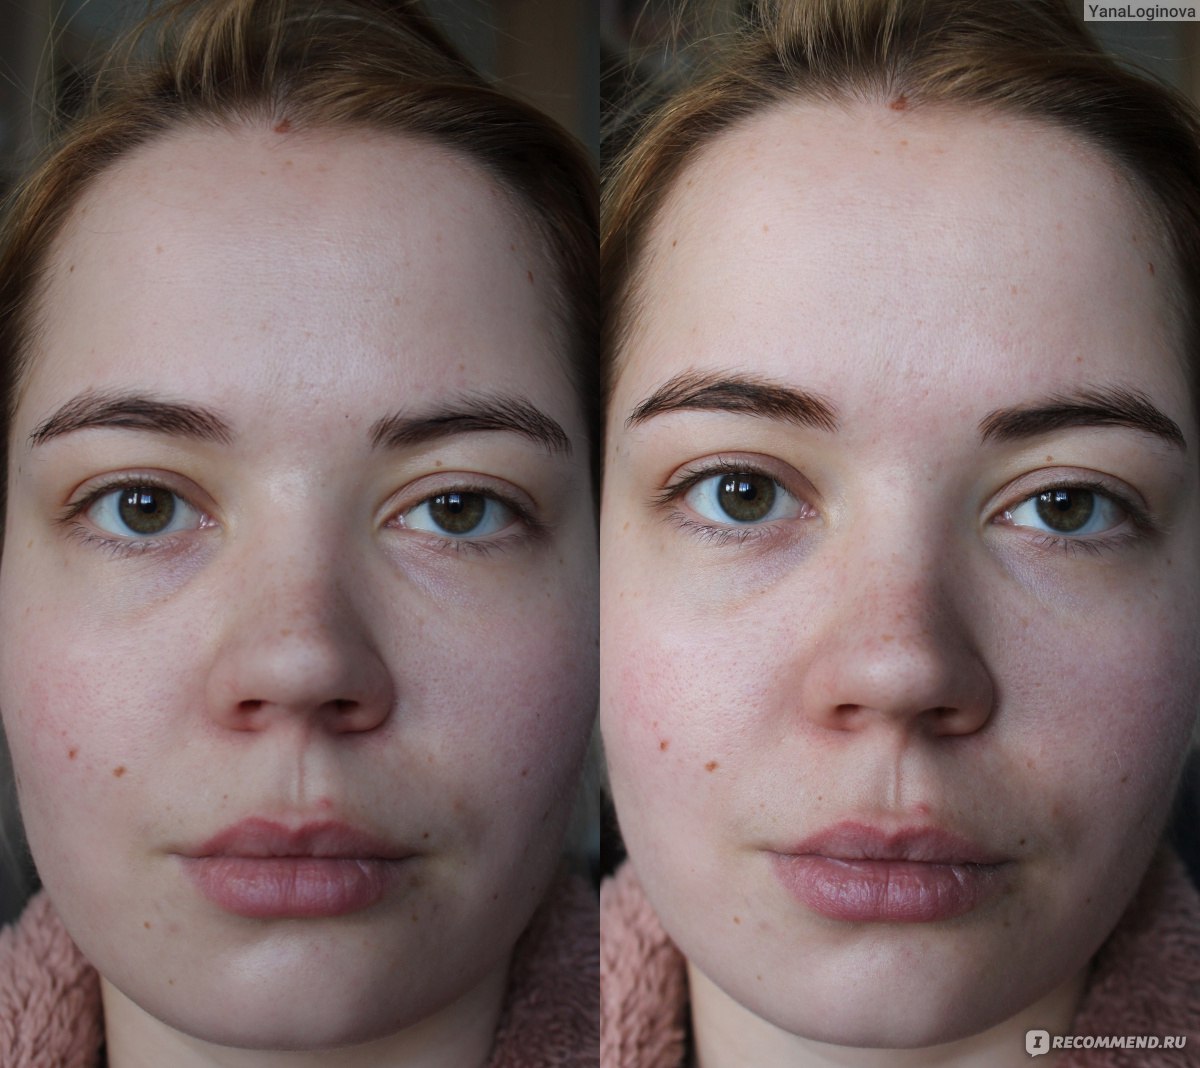 Праймер для лица фото до и после